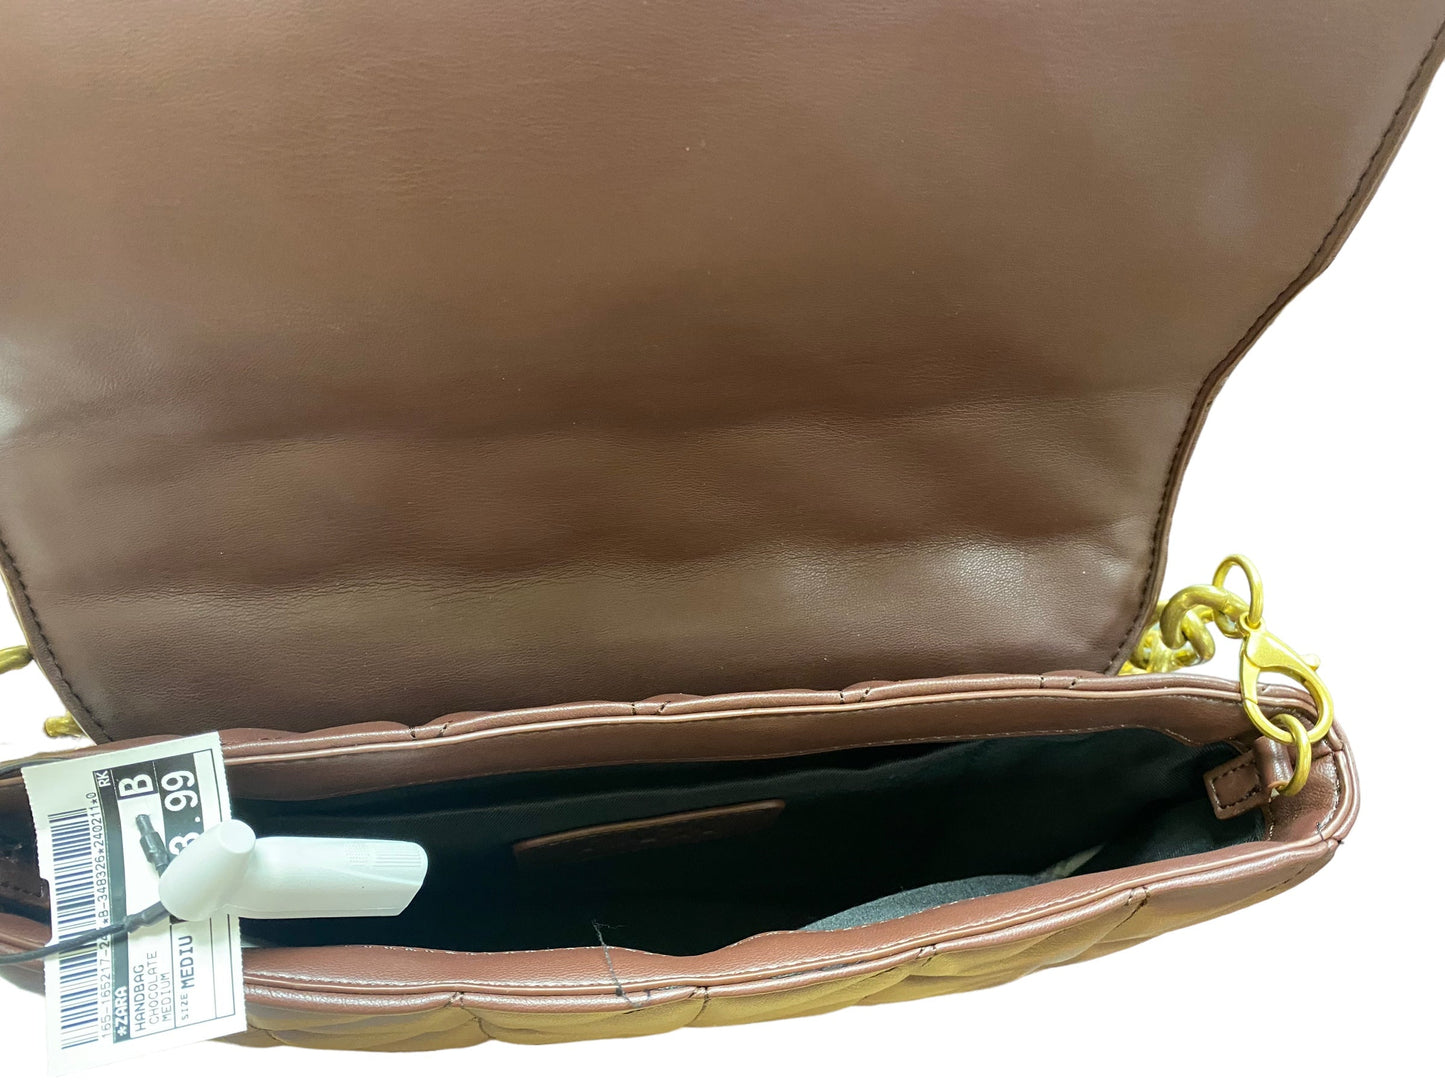 Handbag By Zara  Size: Medium